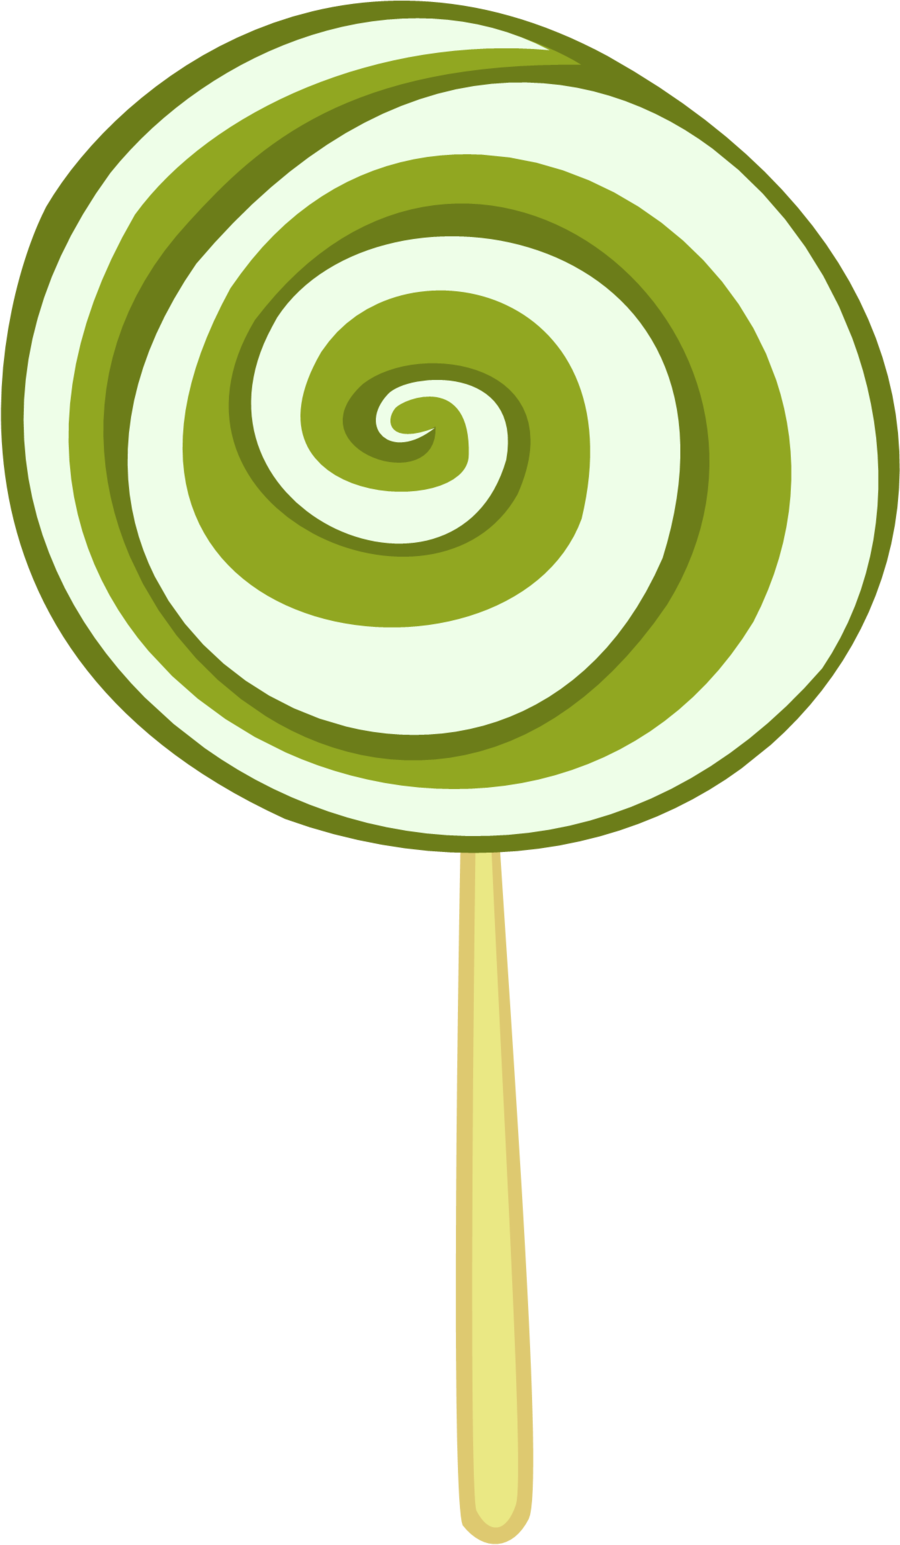 Lollipop clipart 2 image.